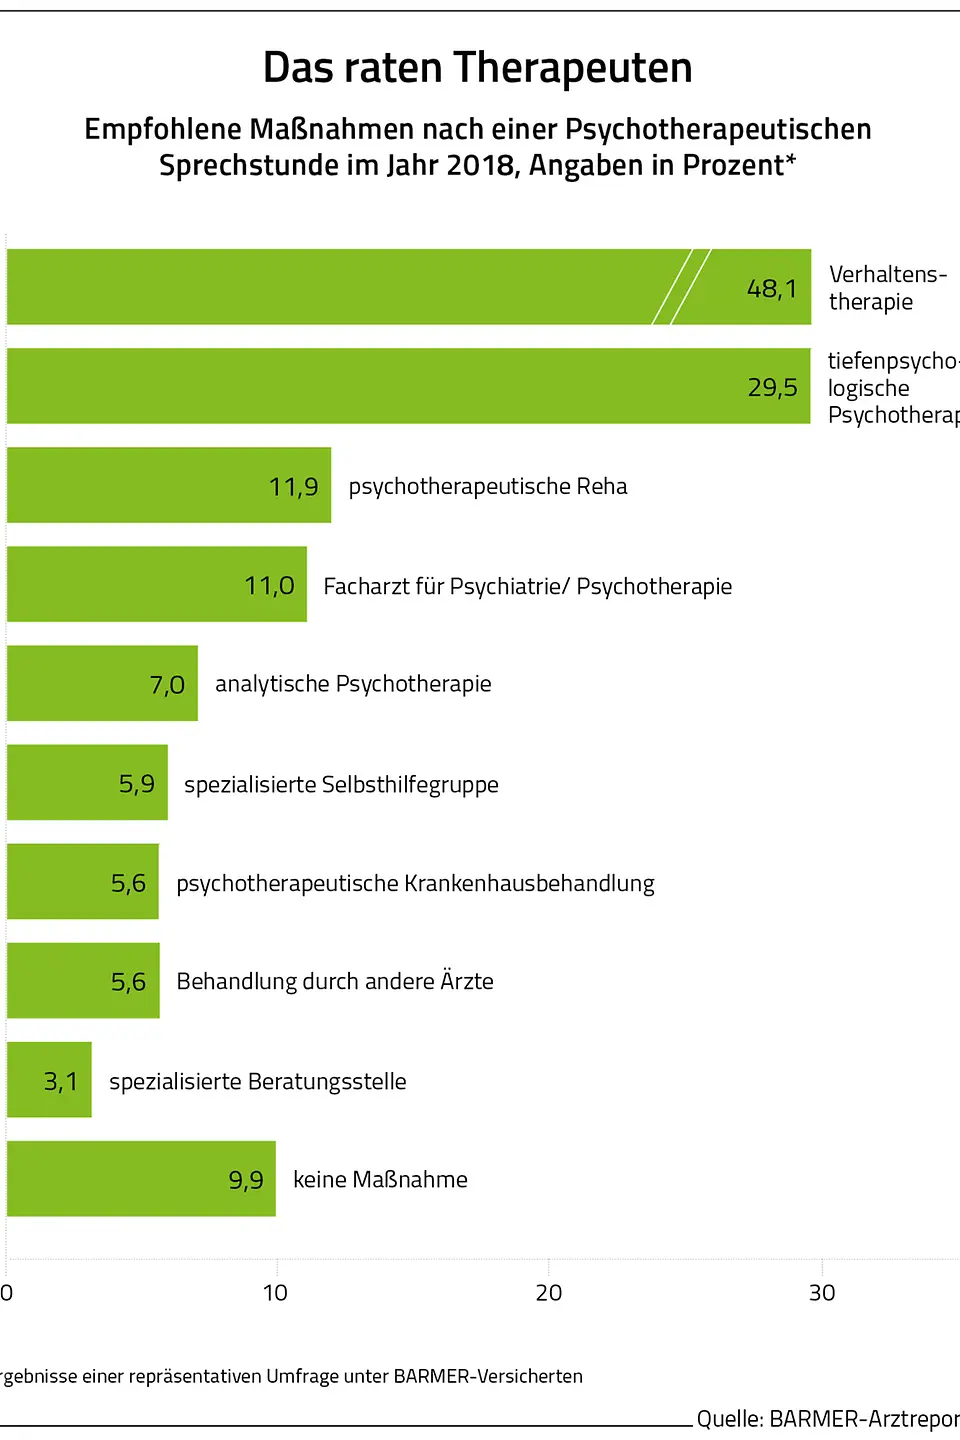 Die Grafik zeigt die empfohlene Maßnahmen nach einer Psychotherapeutischen Sprechstunde im Jahr 2018, Angaben in Prozent